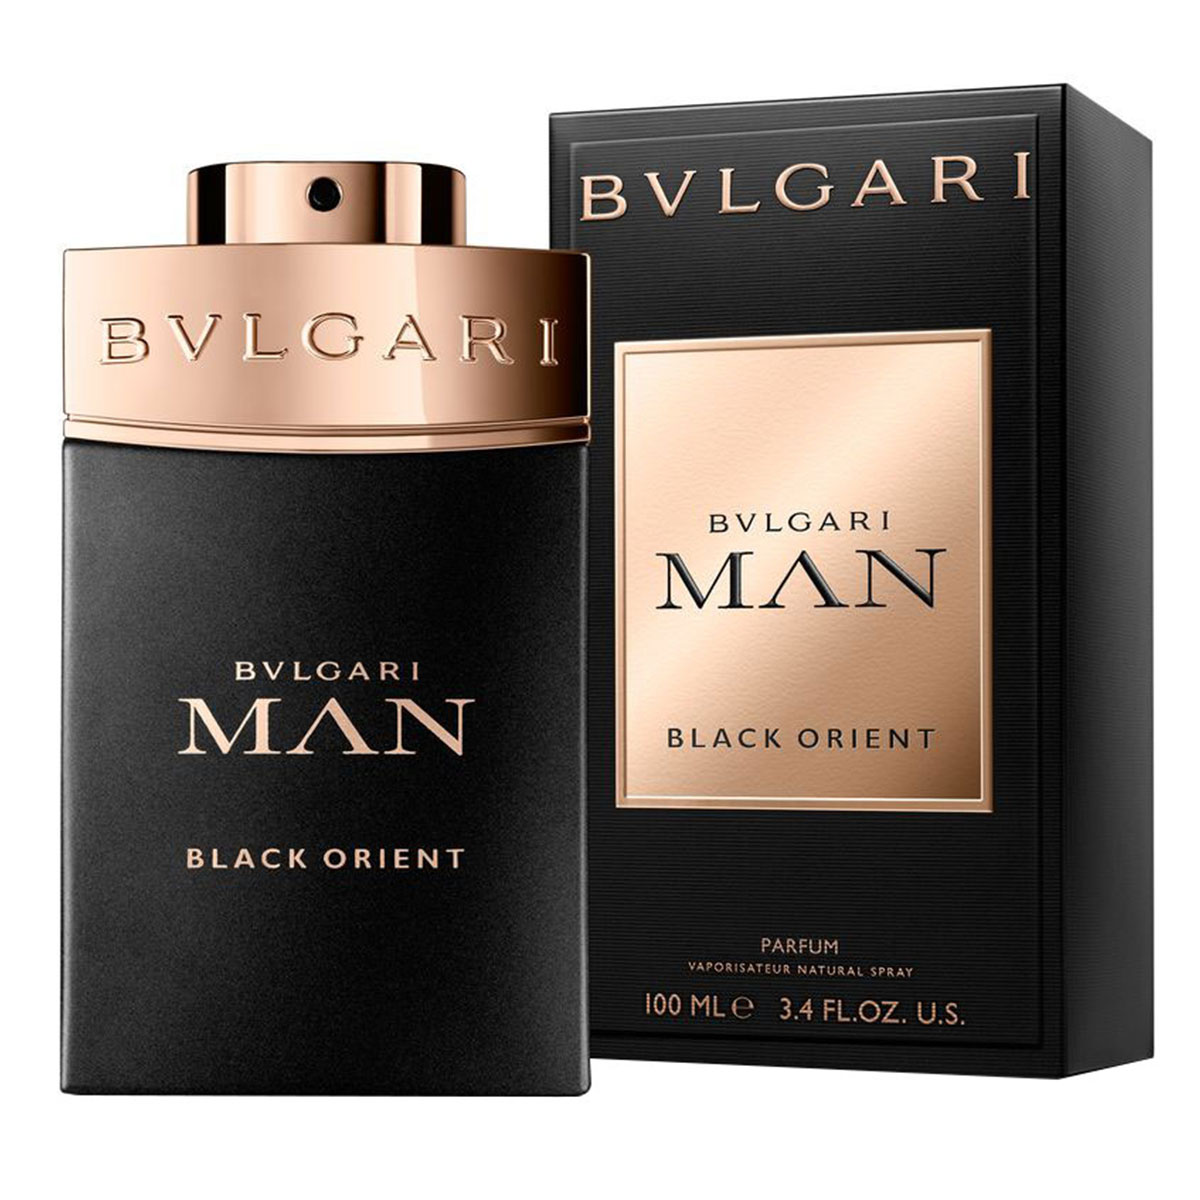 man in black eau de parfum